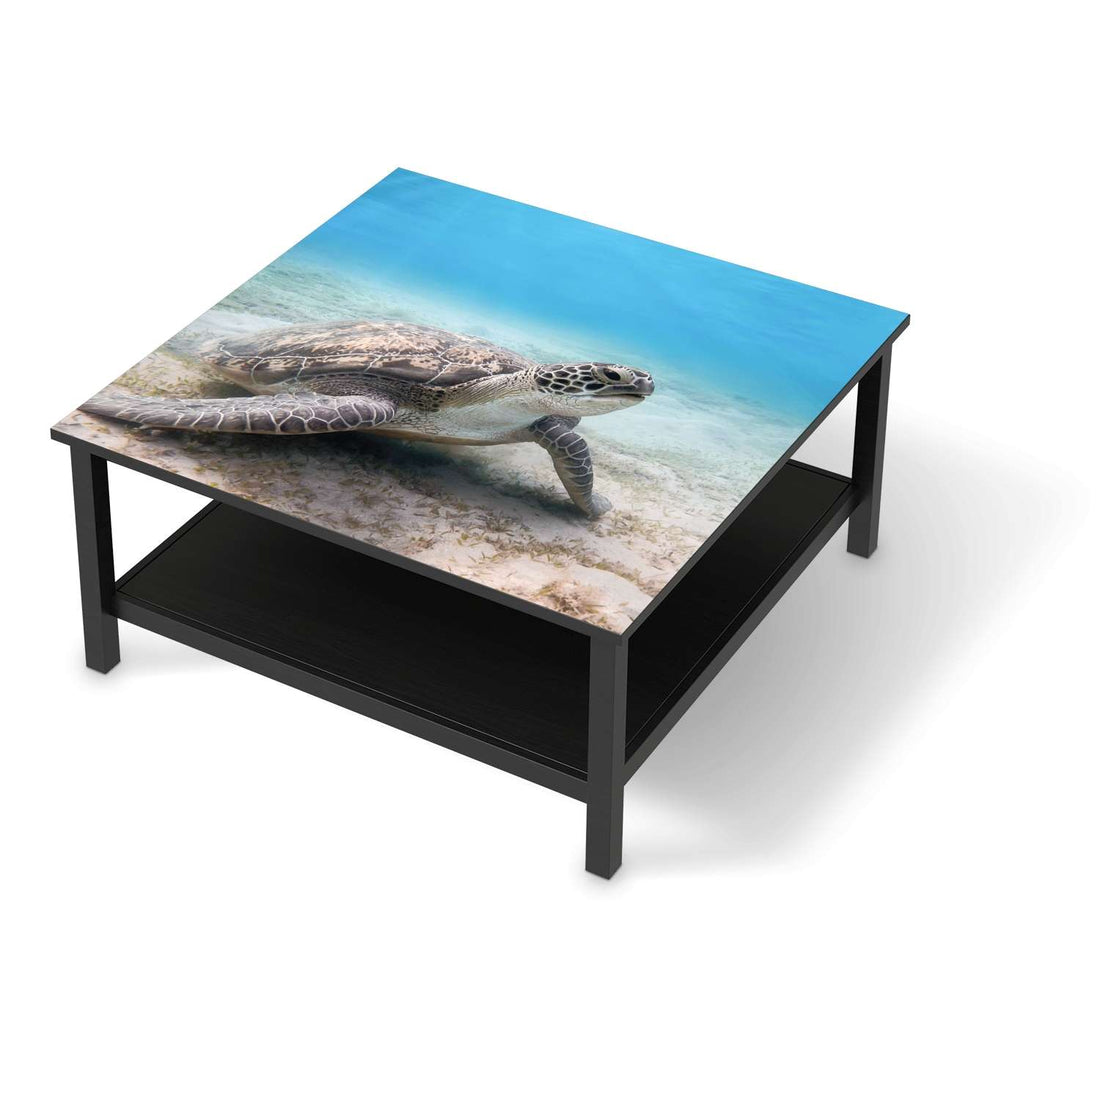 Klebefolie für Möbel Green Sea Turtle - IKEA Hemnes Couchtisch 90x90 cm - schwarz